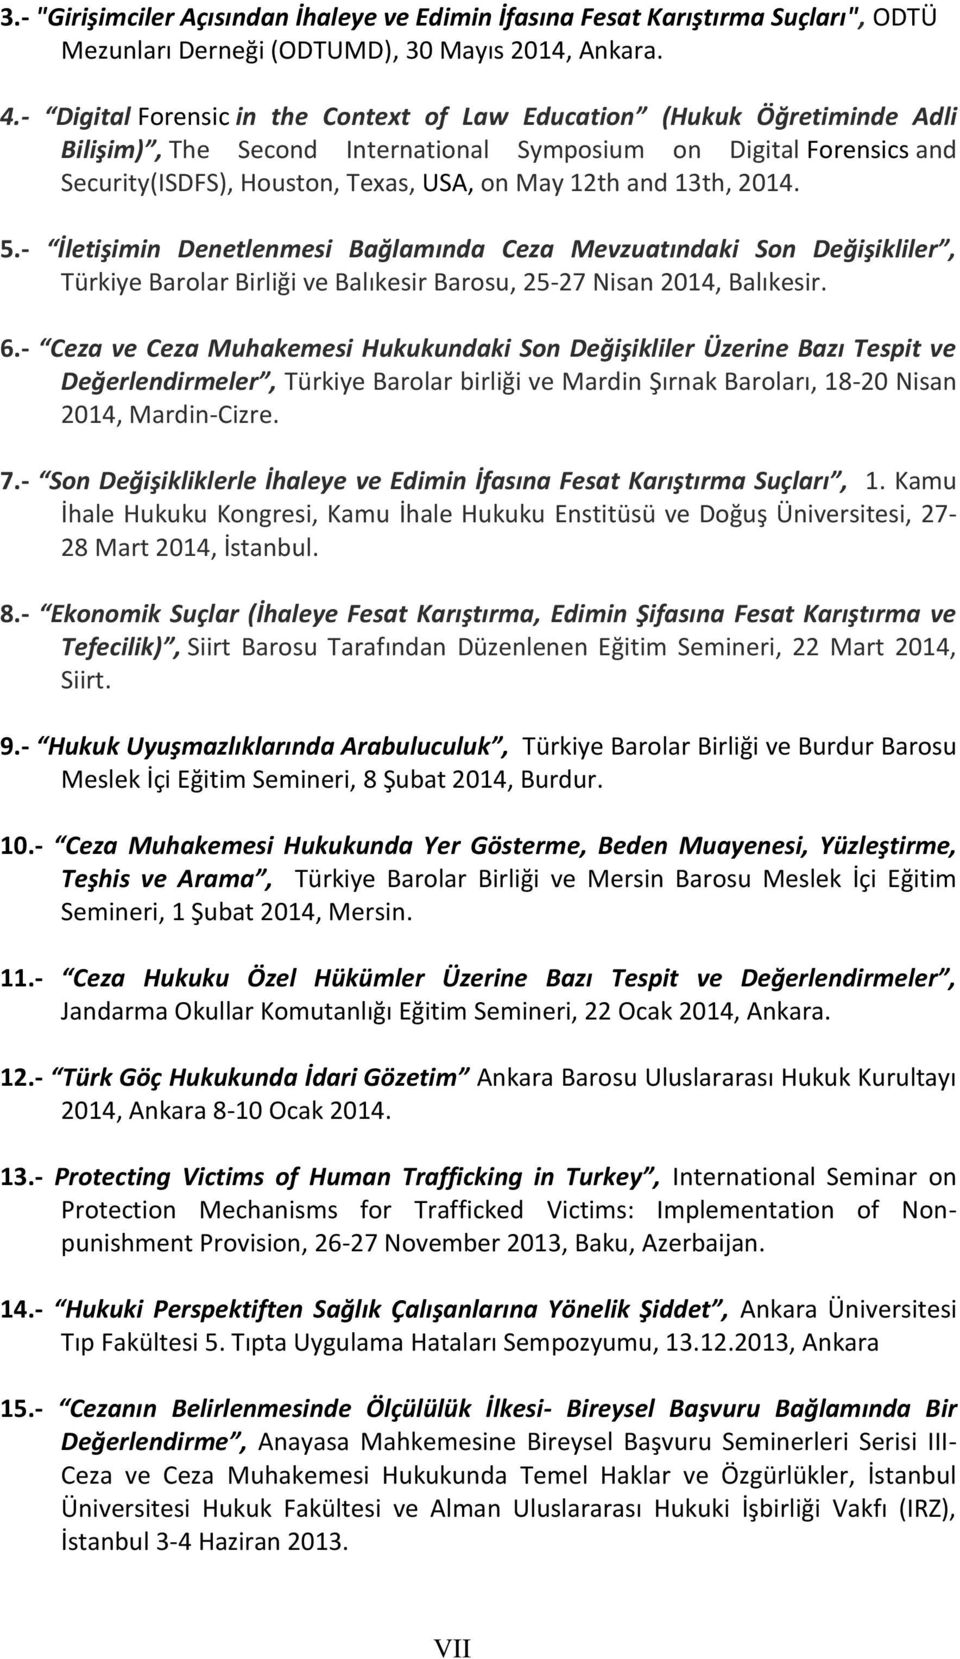 13th, 2014. 5.- İletişimin Denetlenmesi Bağlamında Ceza Mevzuatındaki Son Değişikliler, Türkiye Barolar Birliği ve Balıkesir Barosu, 25-27 Nisan 2014, Balıkesir. 6.